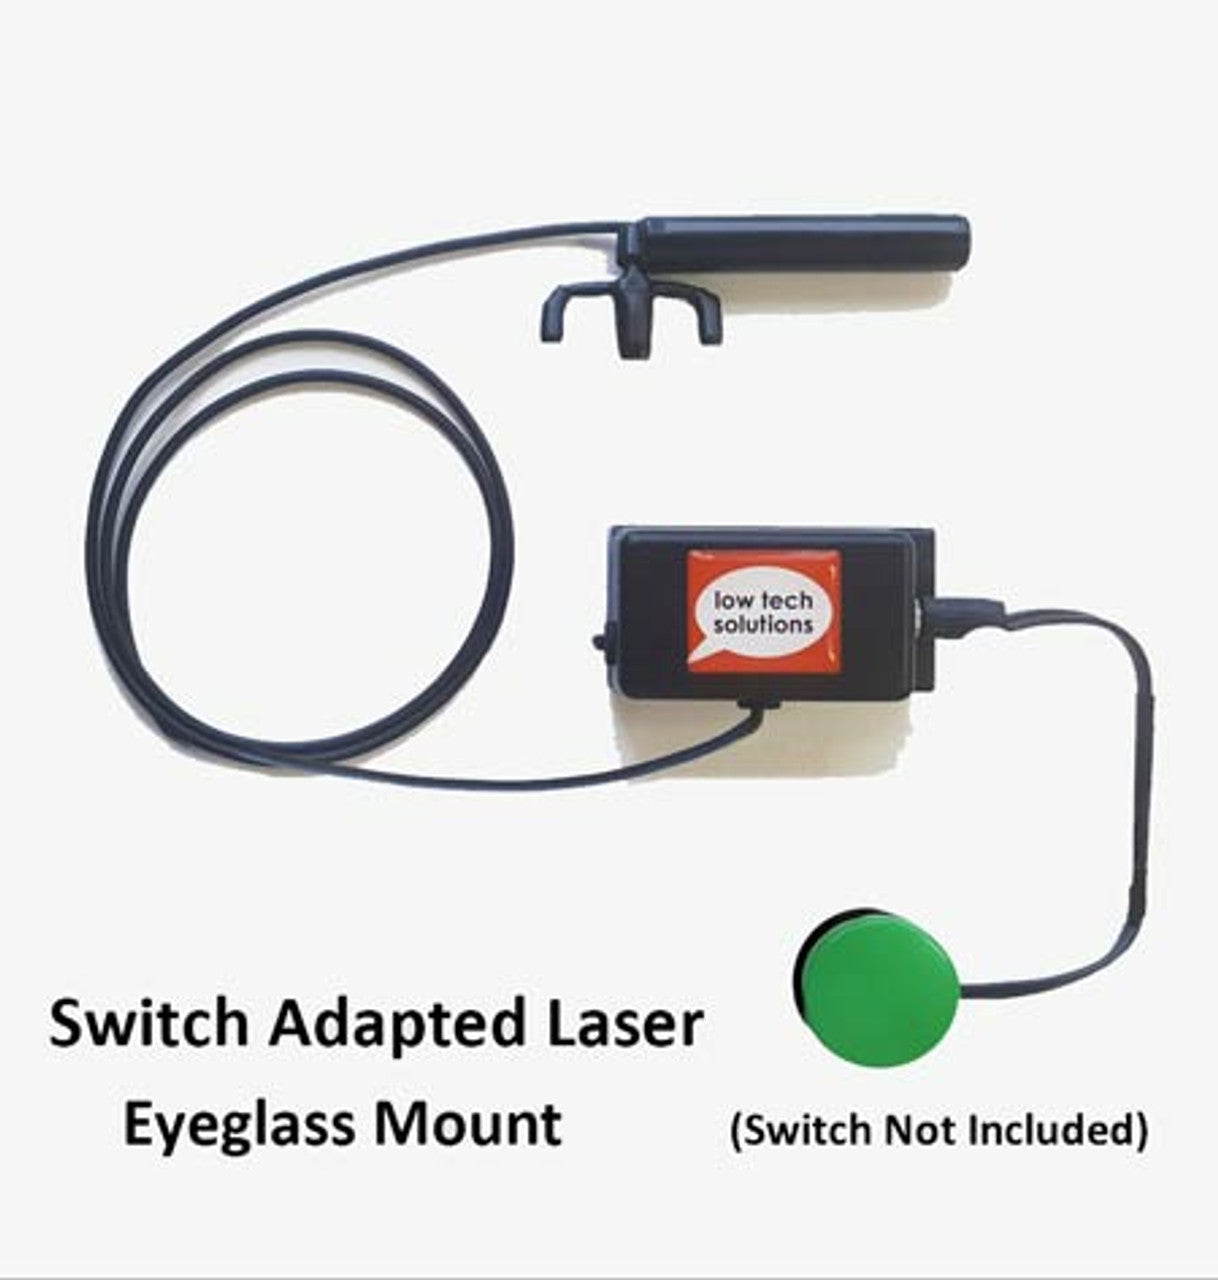 LaserWriter (Eyeglass Mounted)